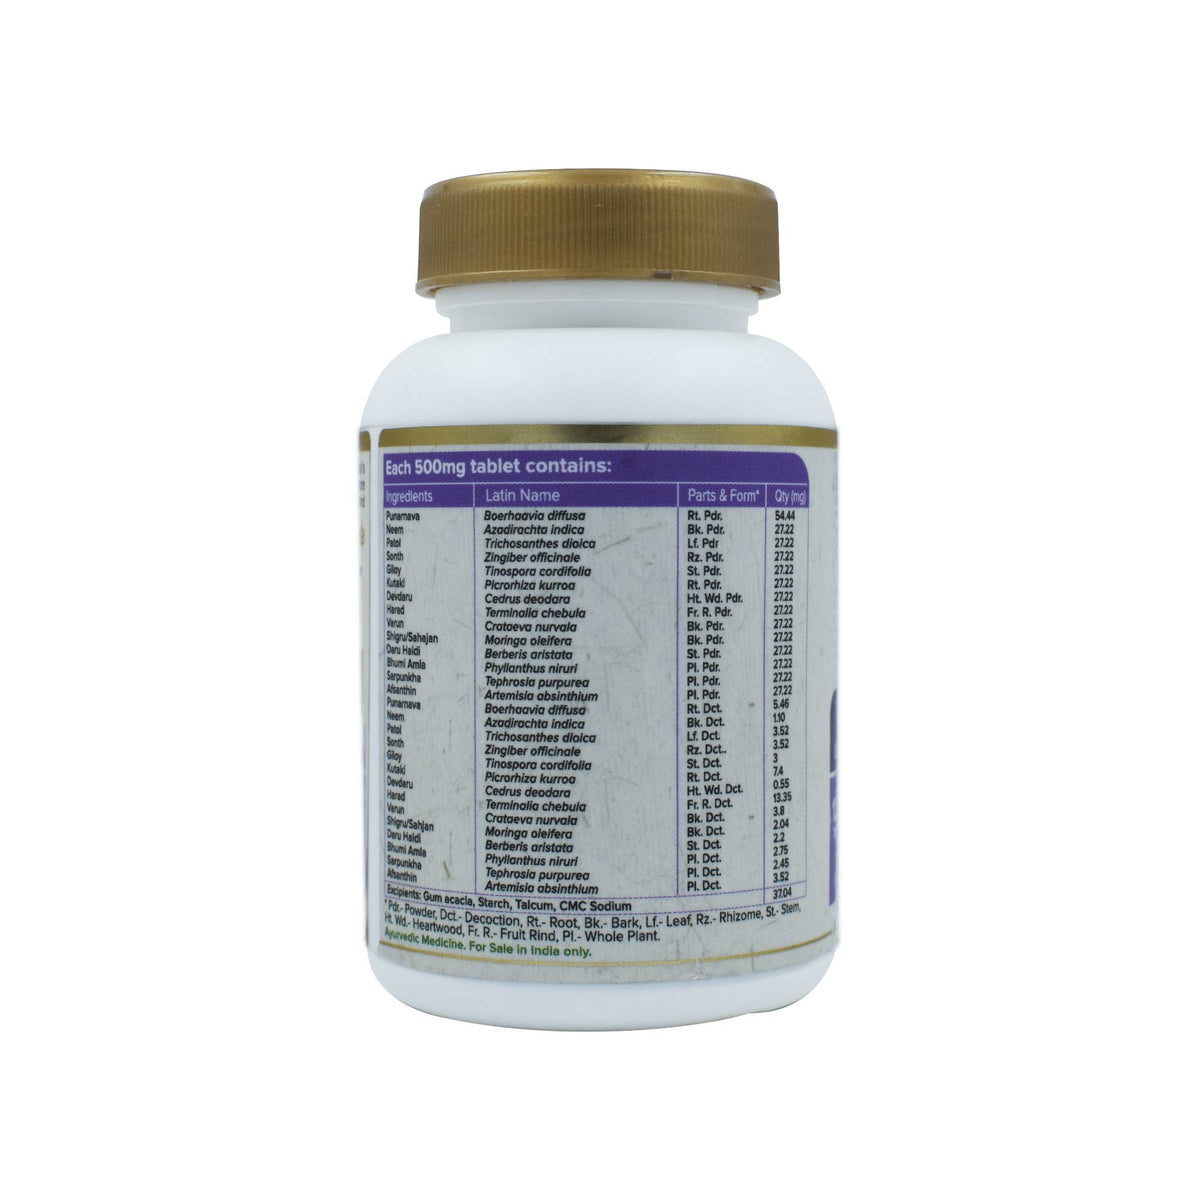 Maharishi Ayurveda Livomap Tablets for Liver Health Management | Rejuvenates Liver Functioning | Improves Digestion and Metabolism - 120 Tablets - Maharishi Ayurveda